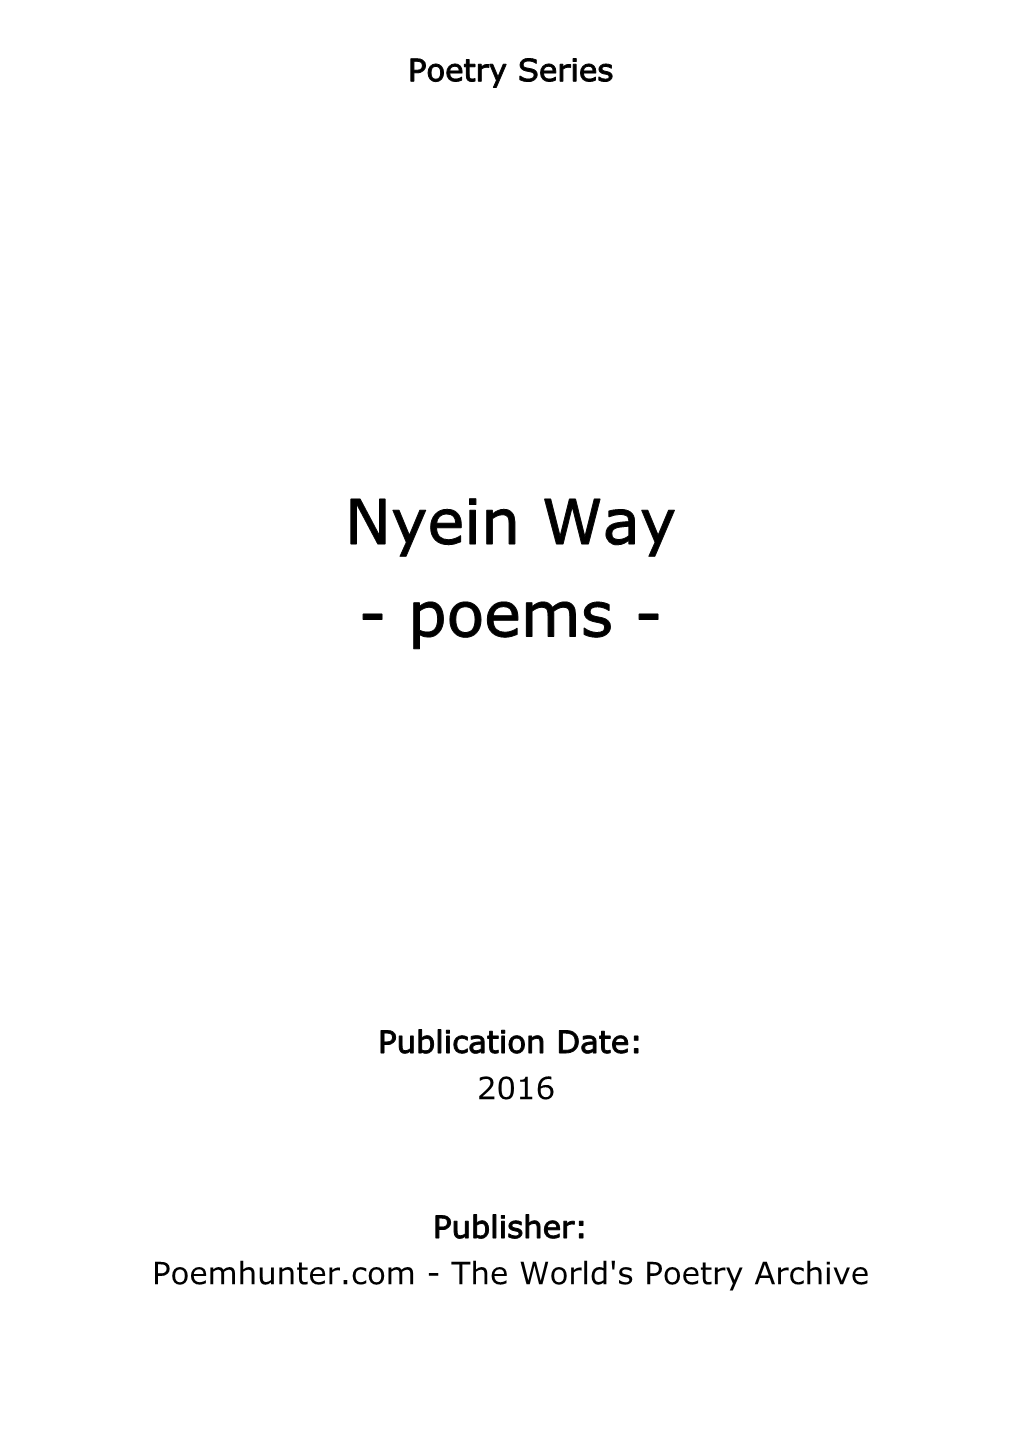 Nyein Way - Poems